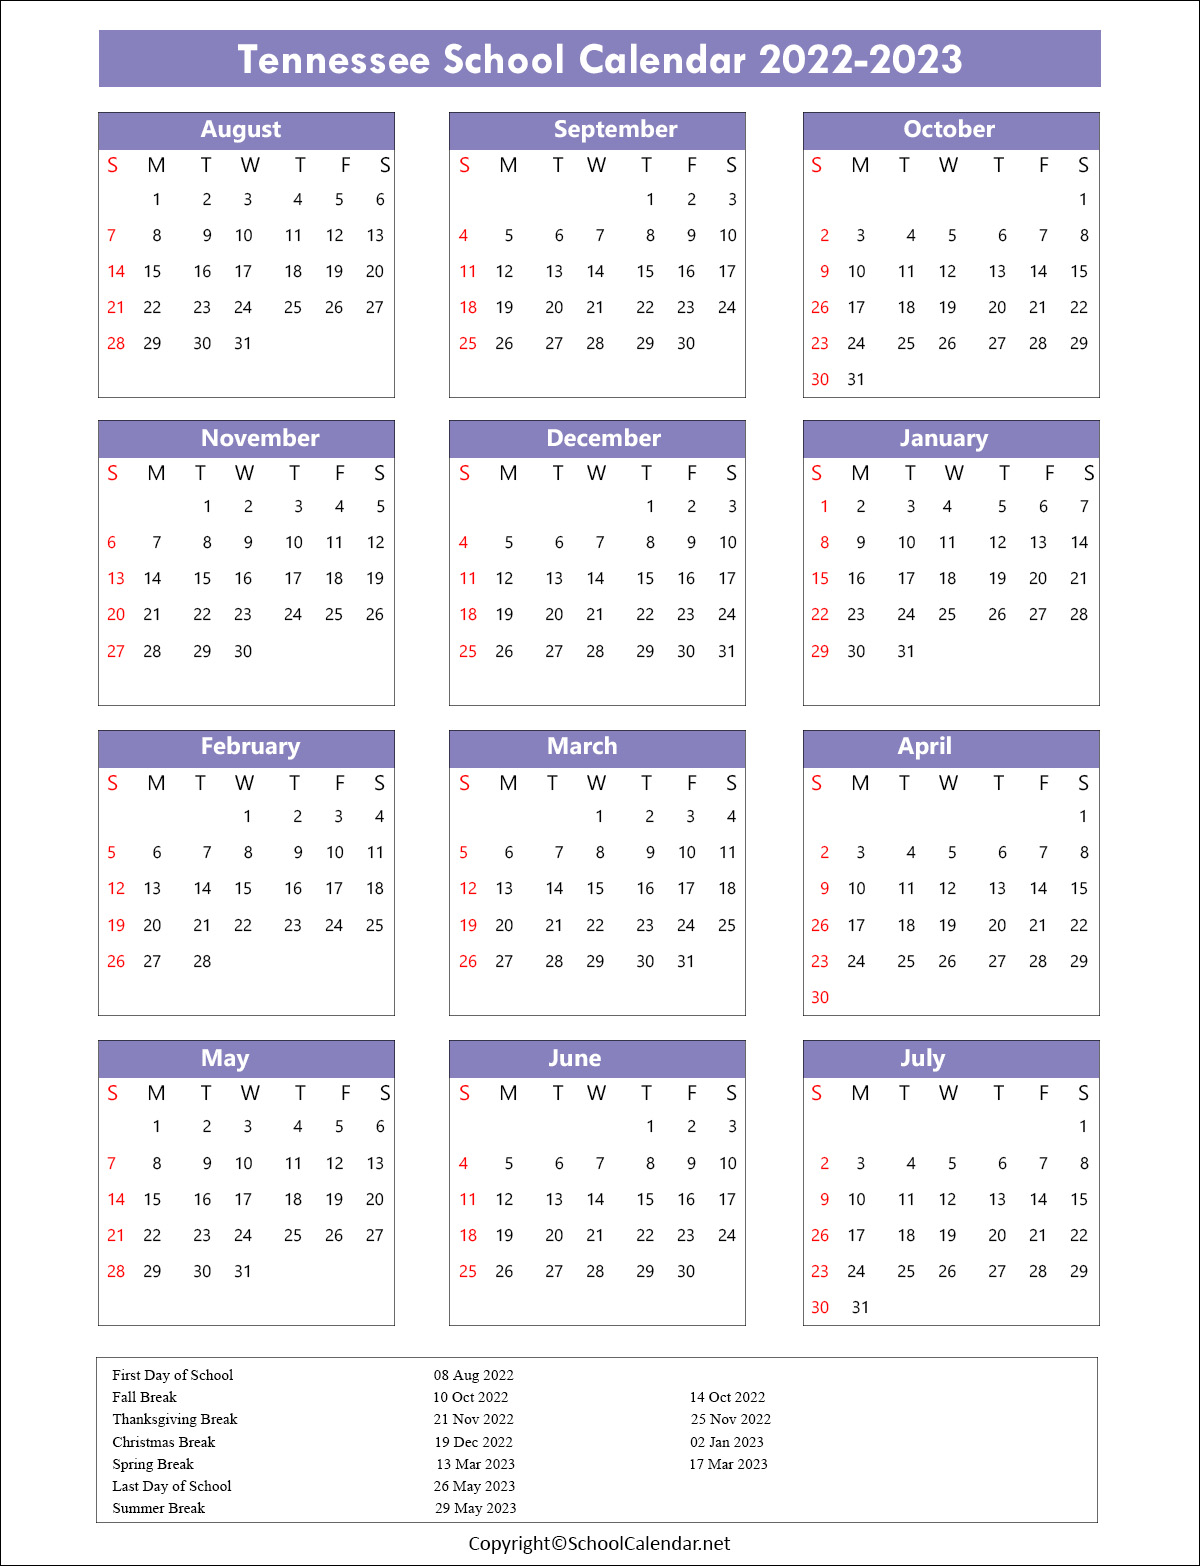 Tennessee School Calendar 2022